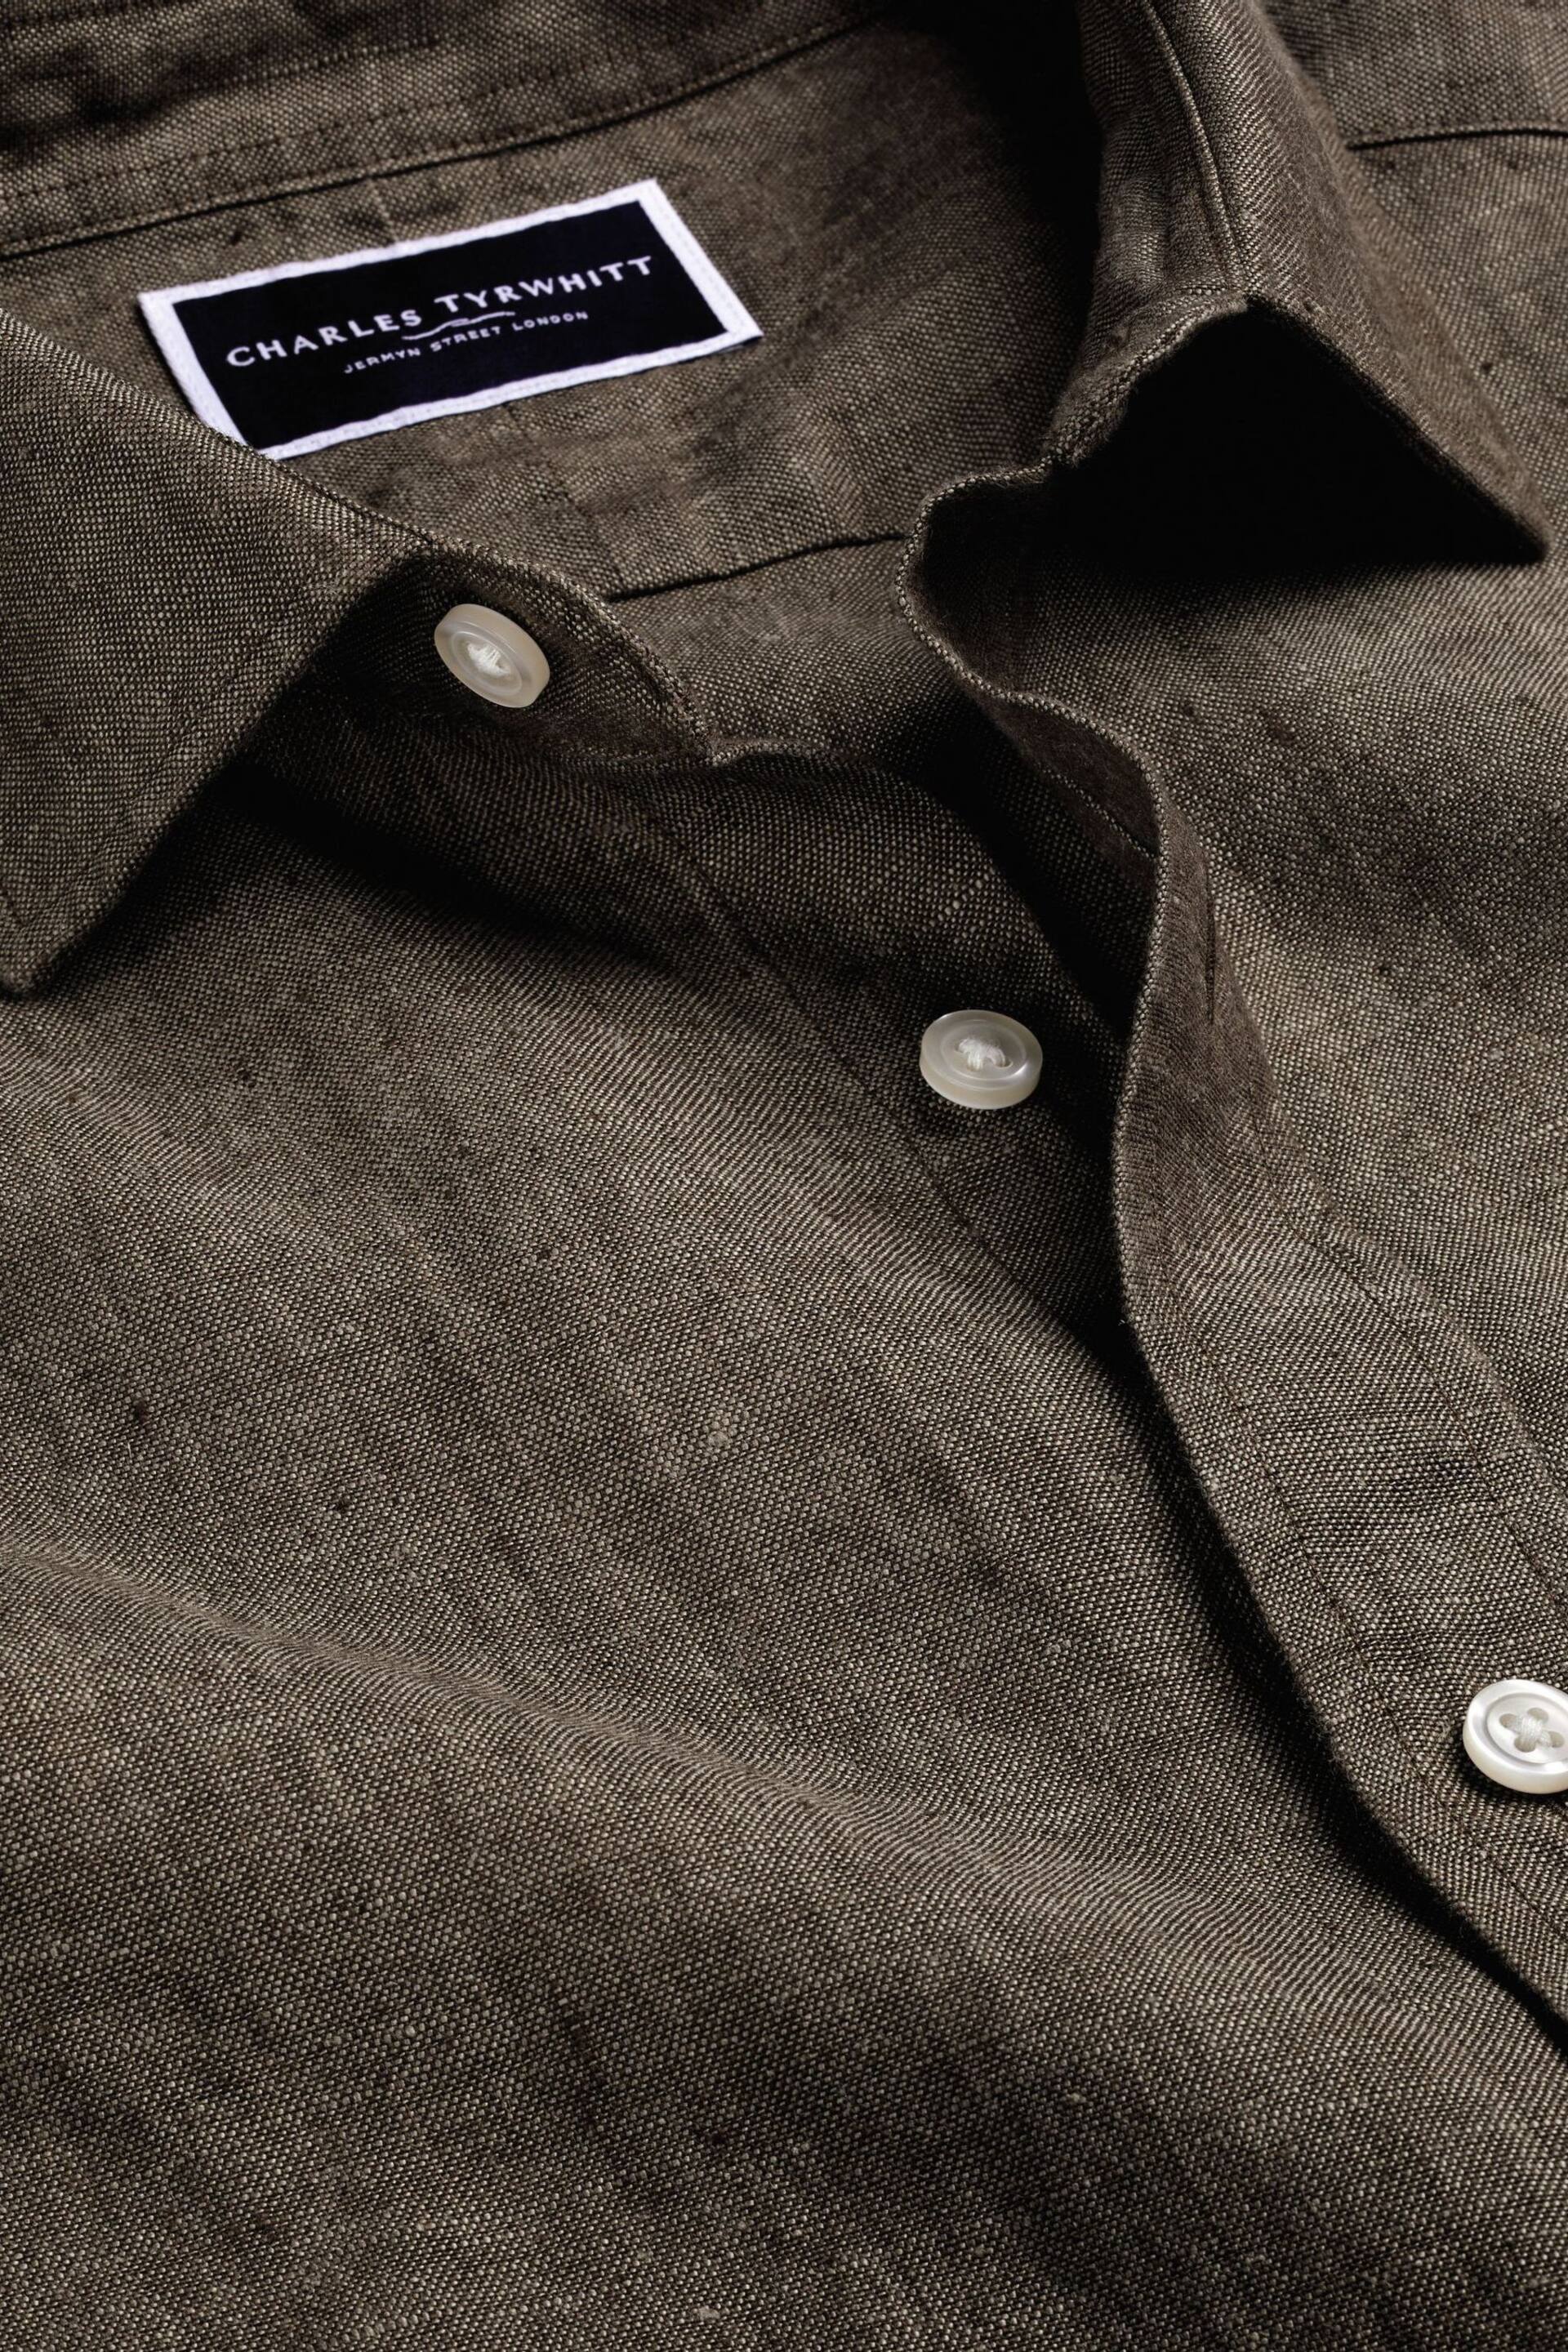 Charles Tyrwhitt Brown Slim Fit Plain Short Sleeve Pure Linen Full Sleeves Shirt - Image 5 of 6